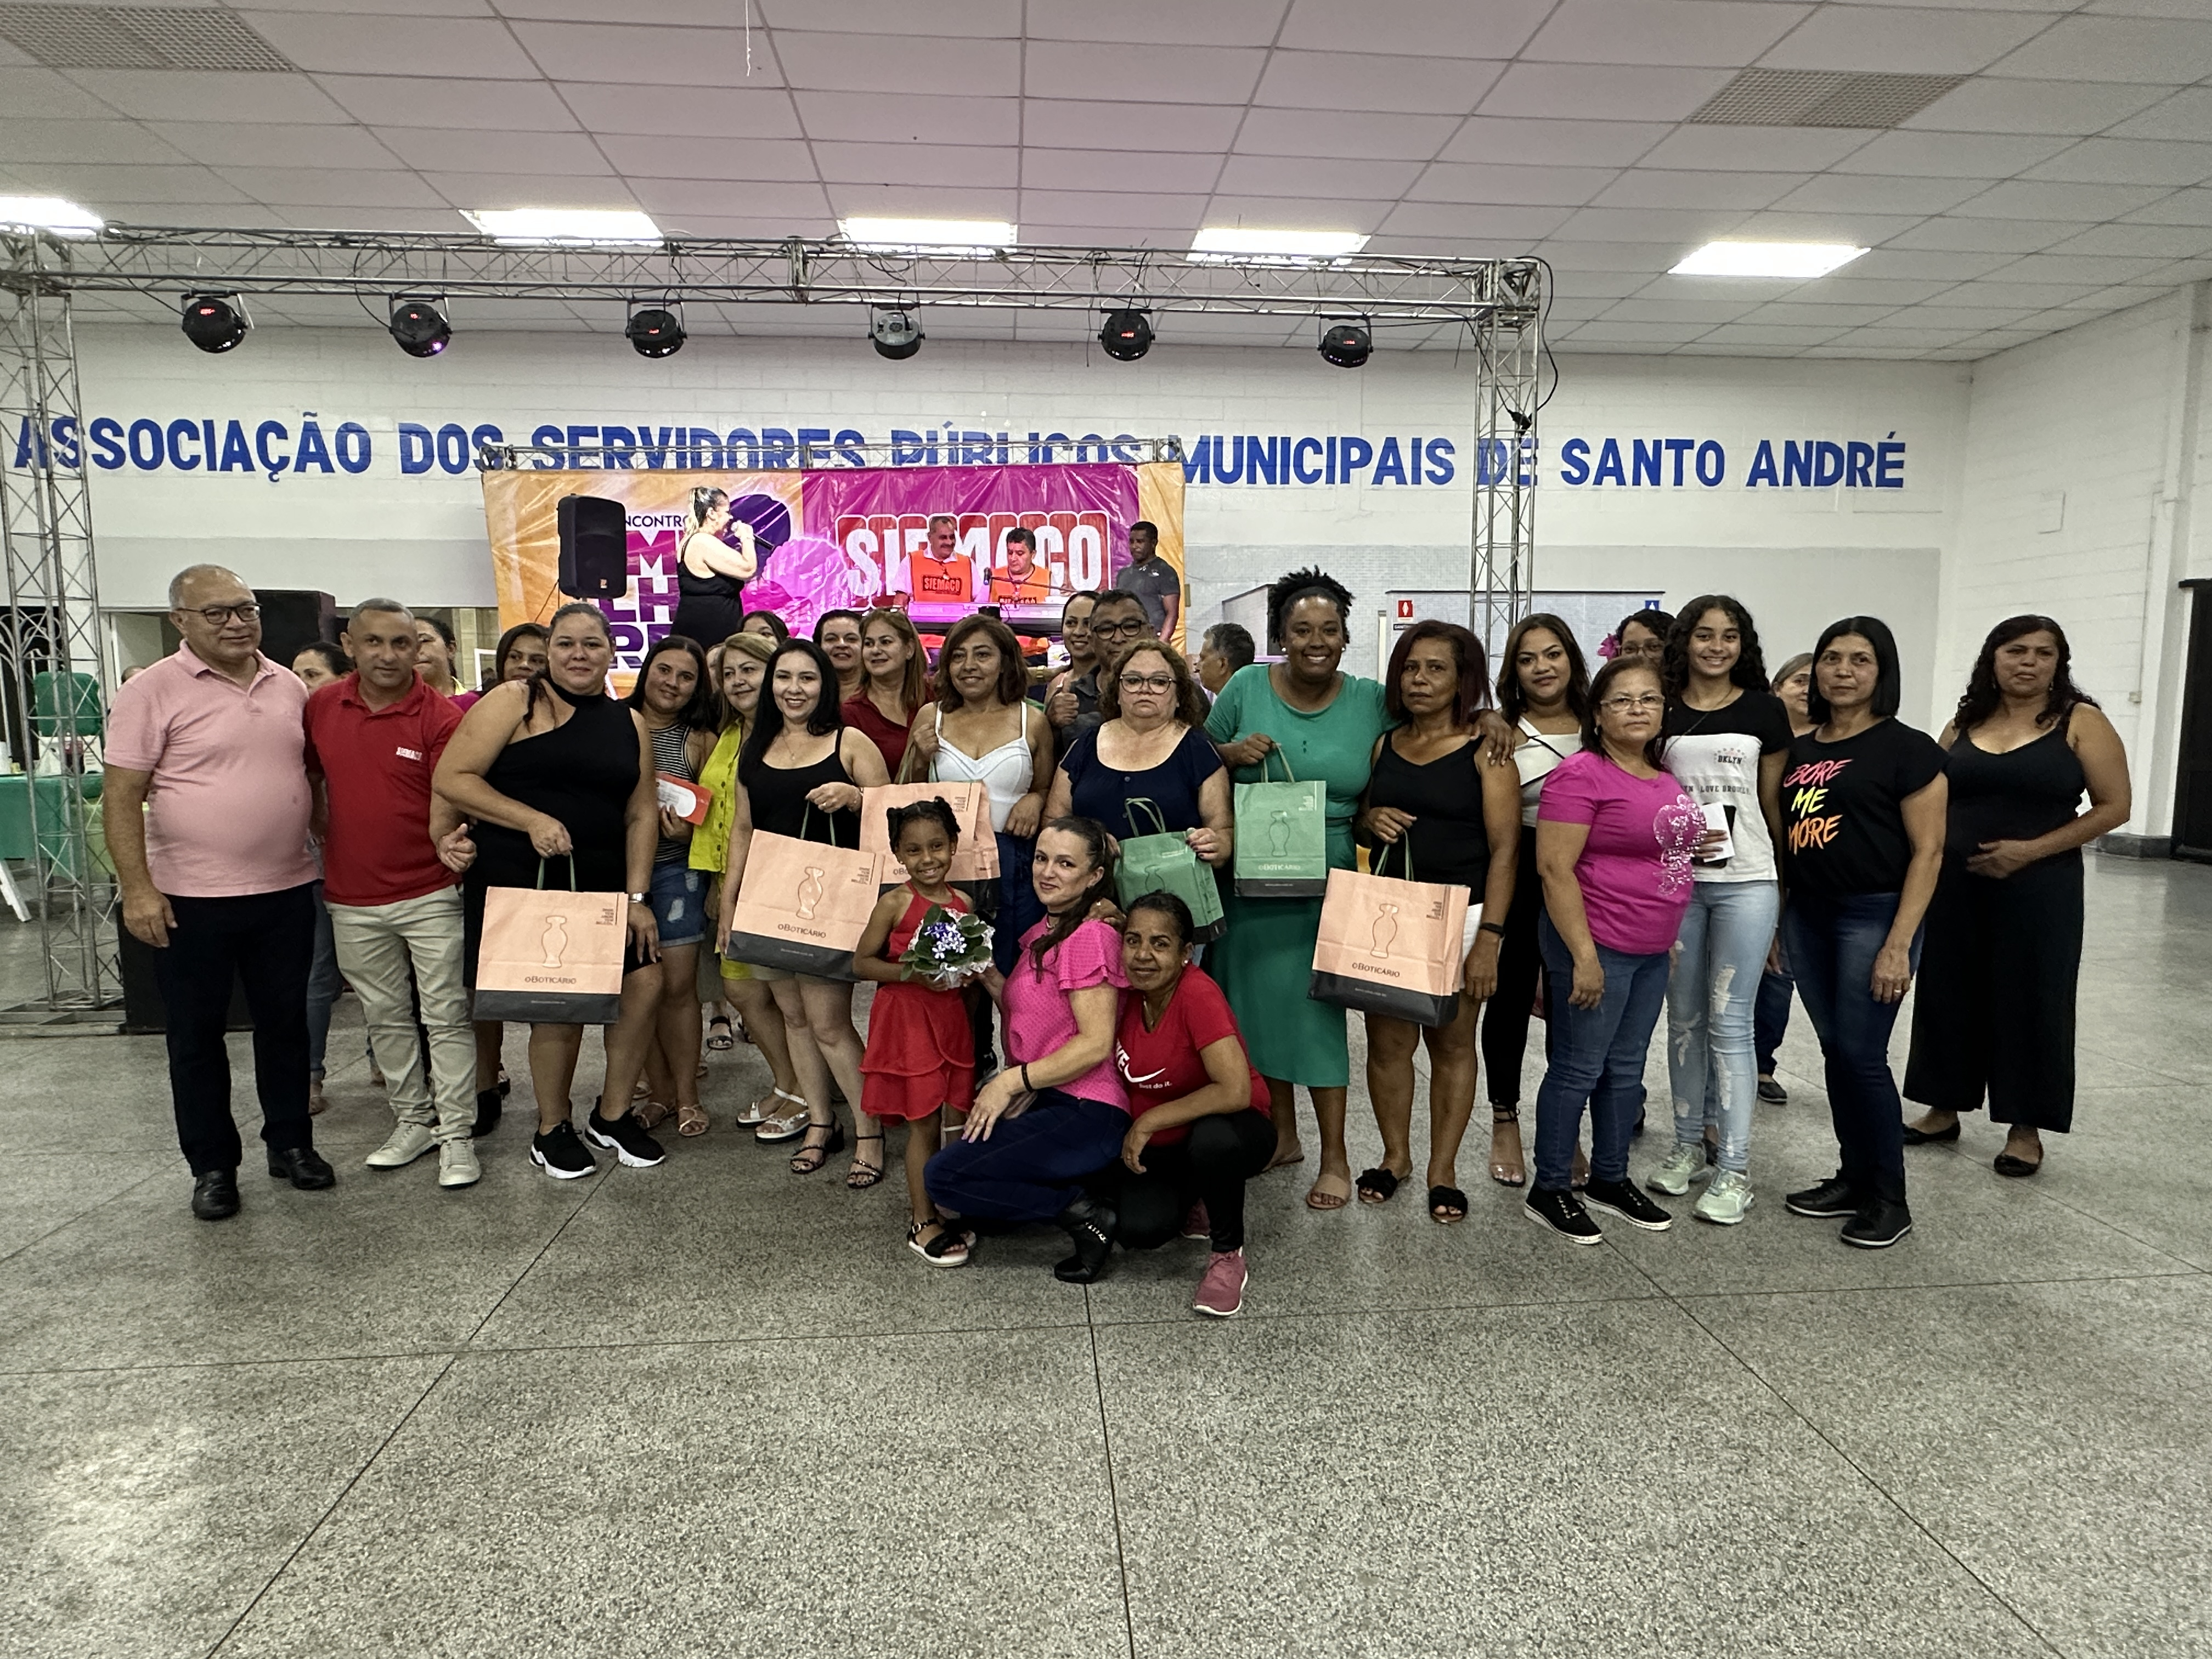 SIEMACO ABC E REGIÃO promove uma grande festa dedicada às Mulheres do Asseio, Conservação, Limpeza Urbana e Áreas Verdes